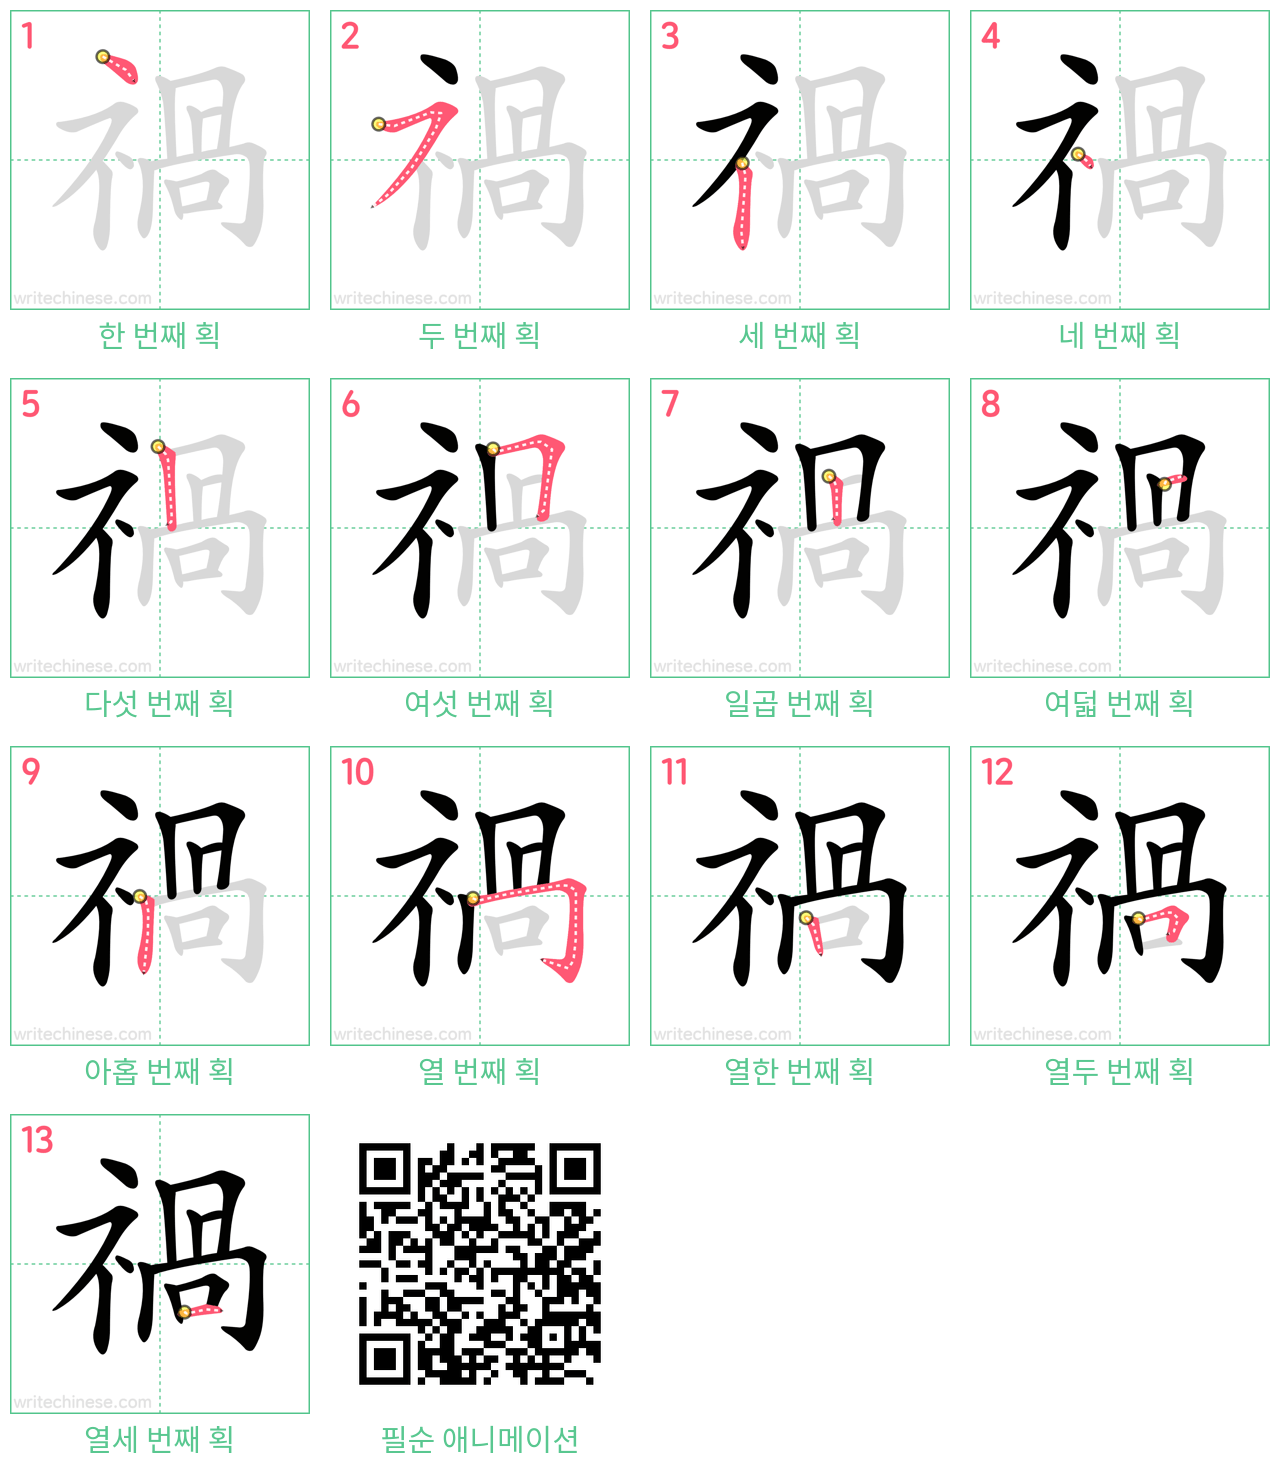 禍 step-by-step stroke order diagrams